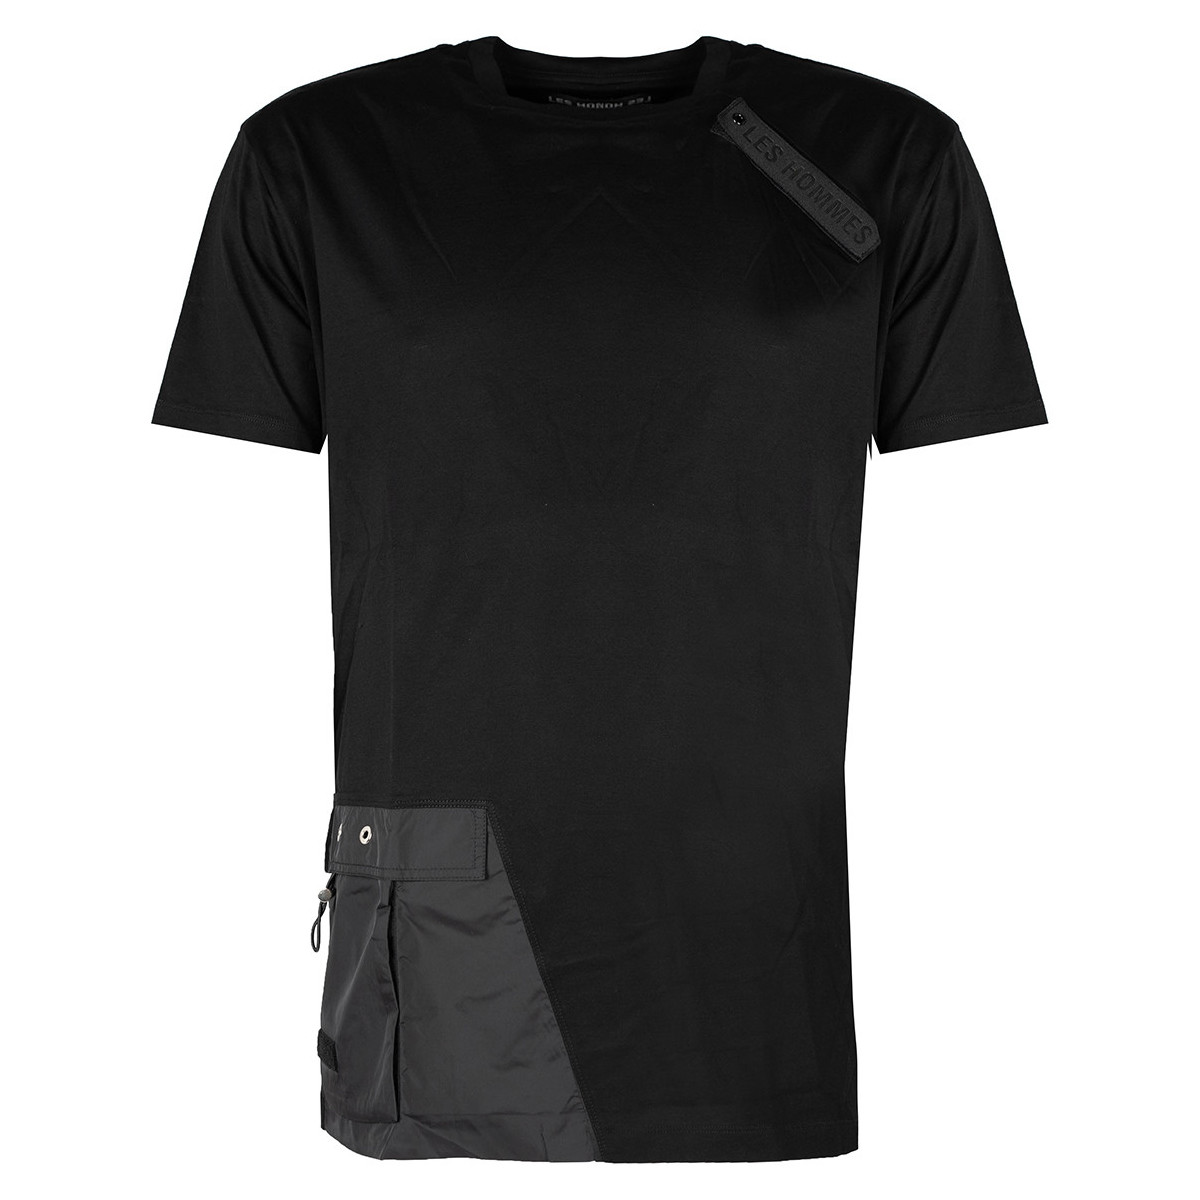 tekstylia Męskie T-shirty z krótkim rękawem Les Hommes LKT152 703 | Oversized Fit Mercerized Cotton T-Shirt Czarny